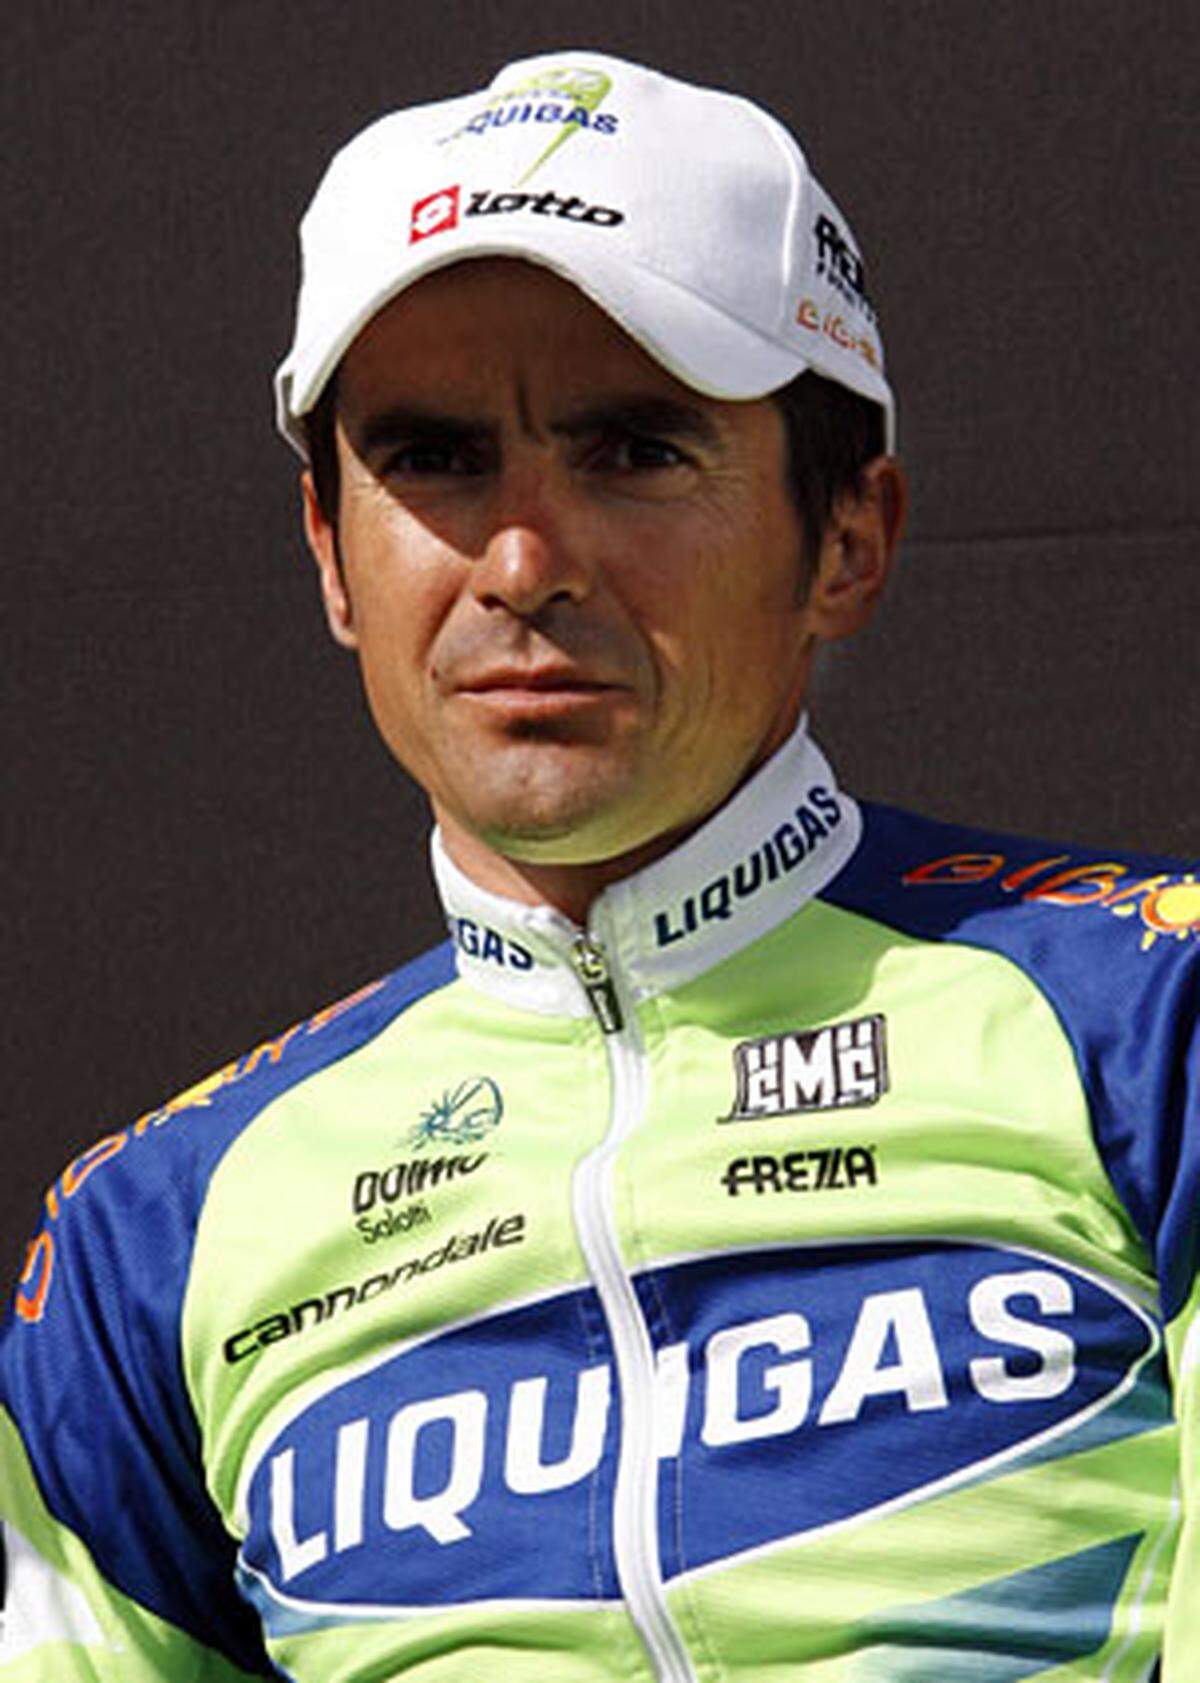 Sein Landsmann Manuel Beltran war bereits nach der ersten Etappe positiv auf das Blutdopnig-Mittel EPO getestet worden. Bereits im Vorjahr war die Tour de France von einigen Dopingskandalen überschattet worden.